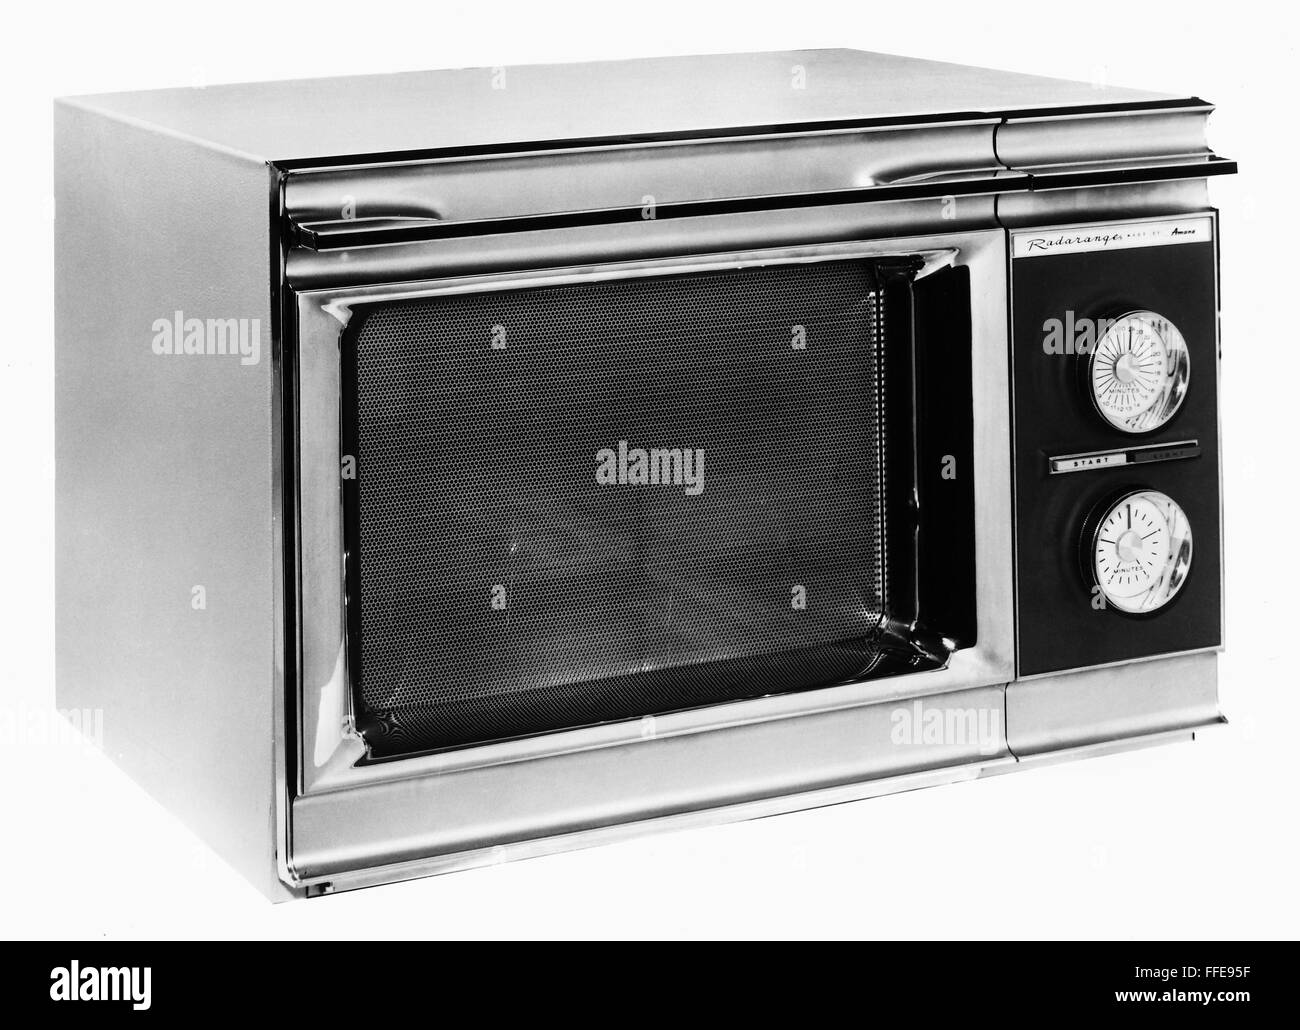 MIKROWELLE, 1967. /nThe Amana Radarange, die erste Mikrowelle entwickelt  für den Heimgebrauch, 1967 Stockfotografie - Alamy